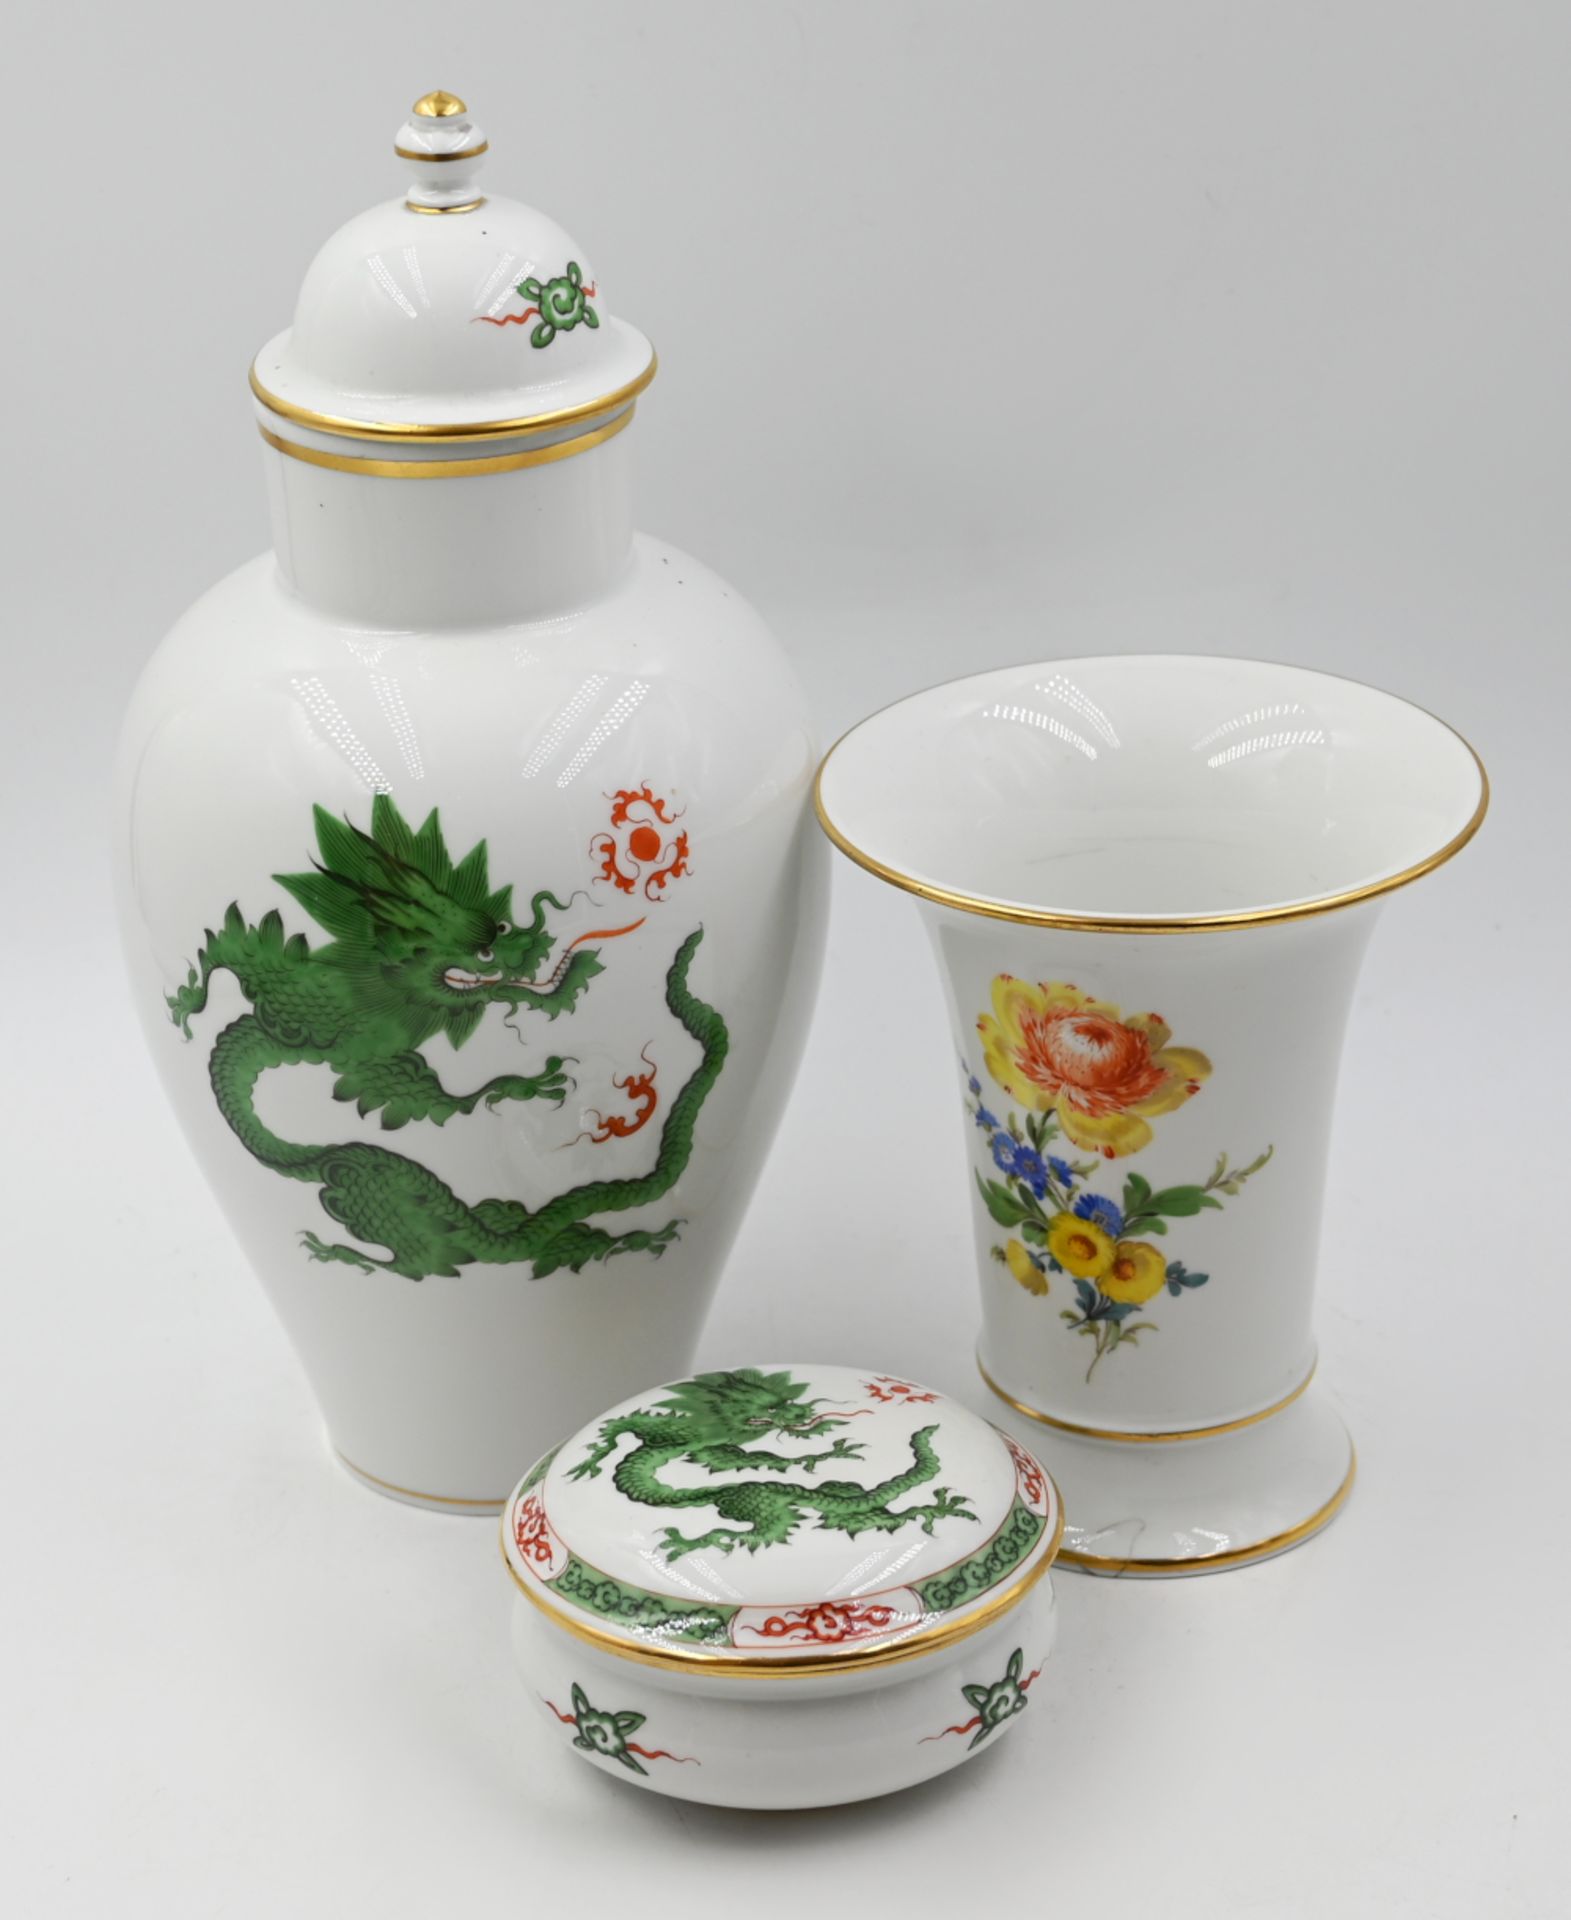 2 Vasen, 1 Deckeldose Porzellan MEISSEN z.T. 2x gestrichen, versch. Dekore "Grüner Mingdrache",